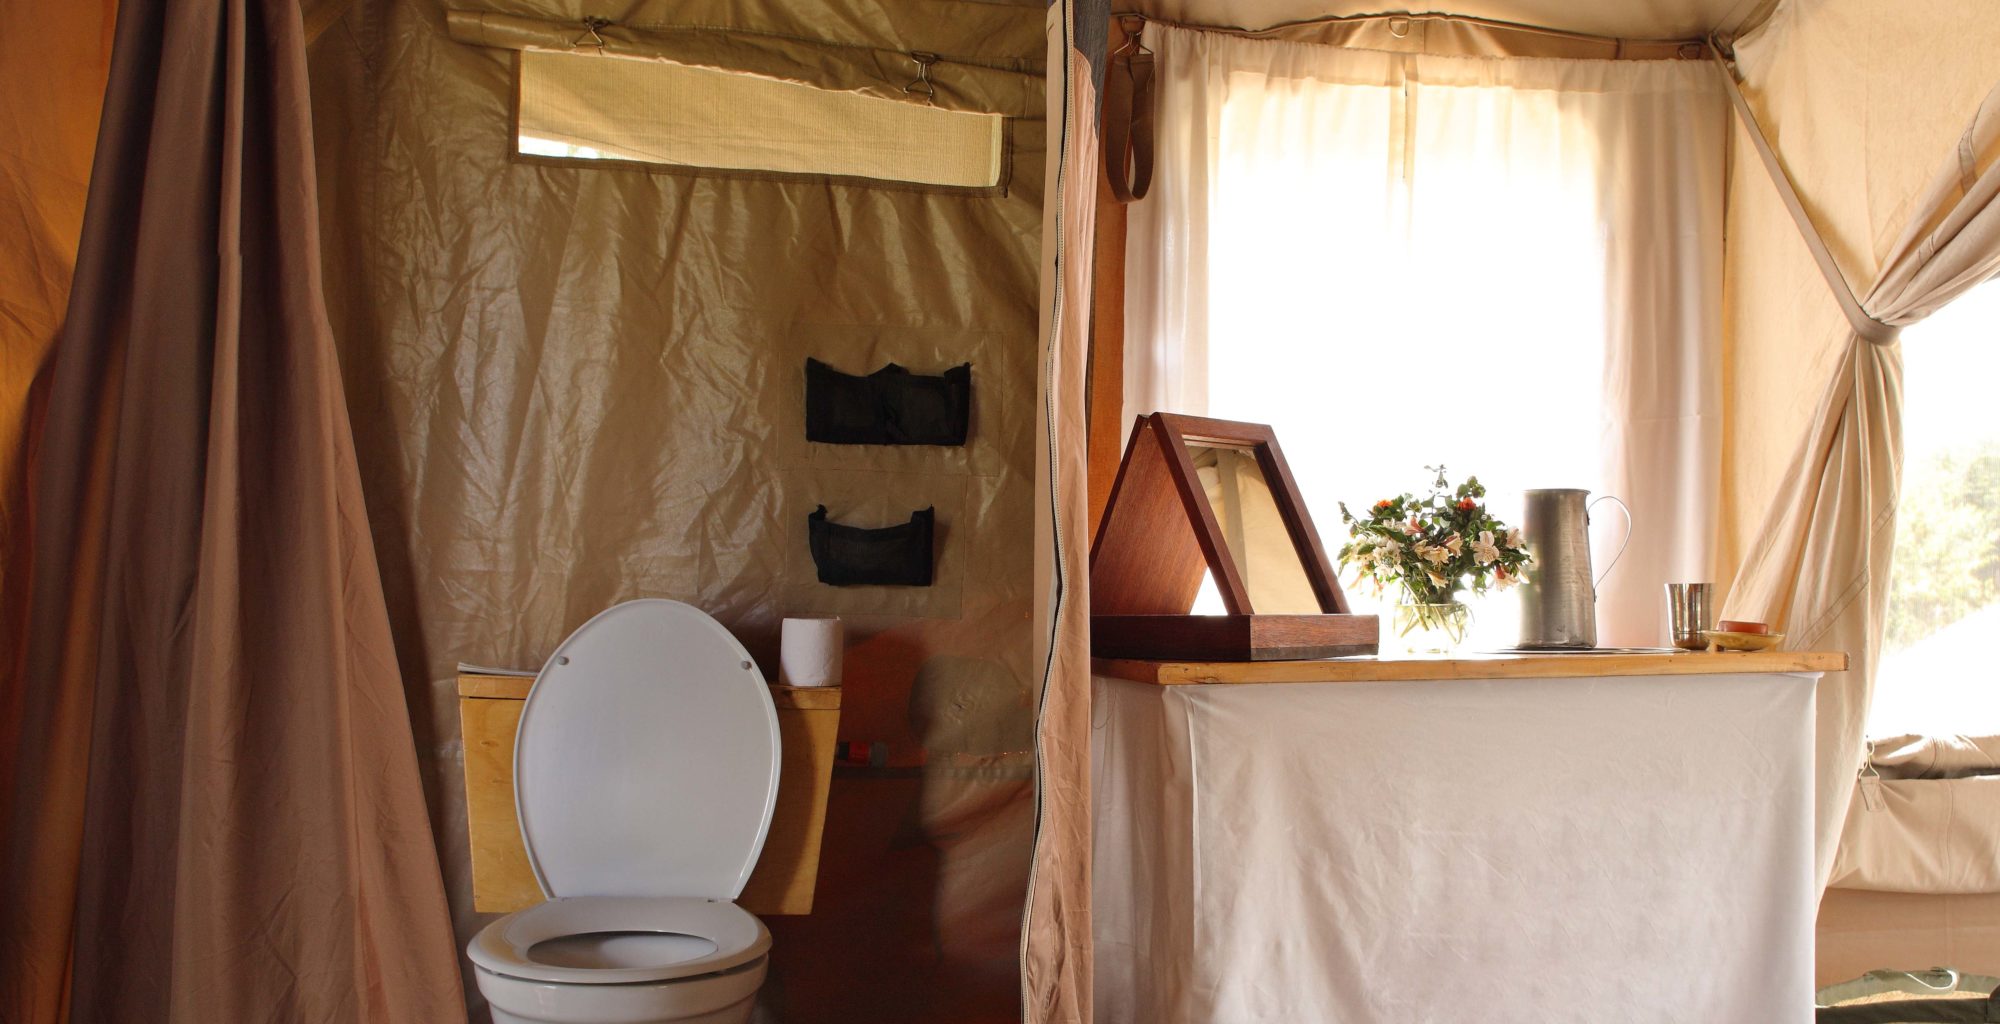 Lowis-and-Leakey-Kenya-Bathroom